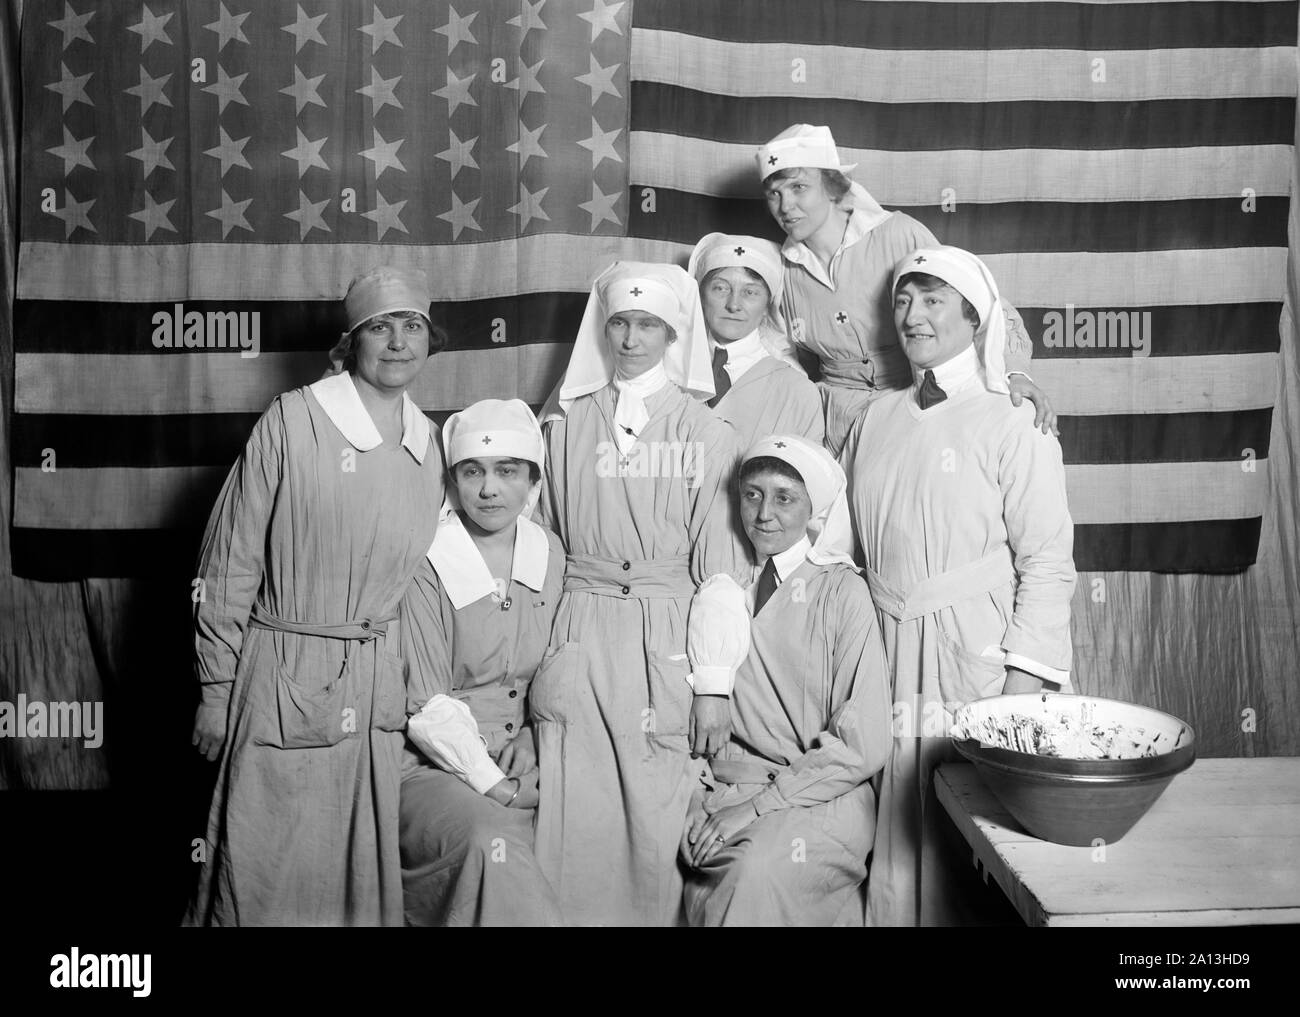 Un groupe de travailleurs de la Croix-Rouge américaine debout avec le drapeau américain, Paris, 1919. Banque D'Images